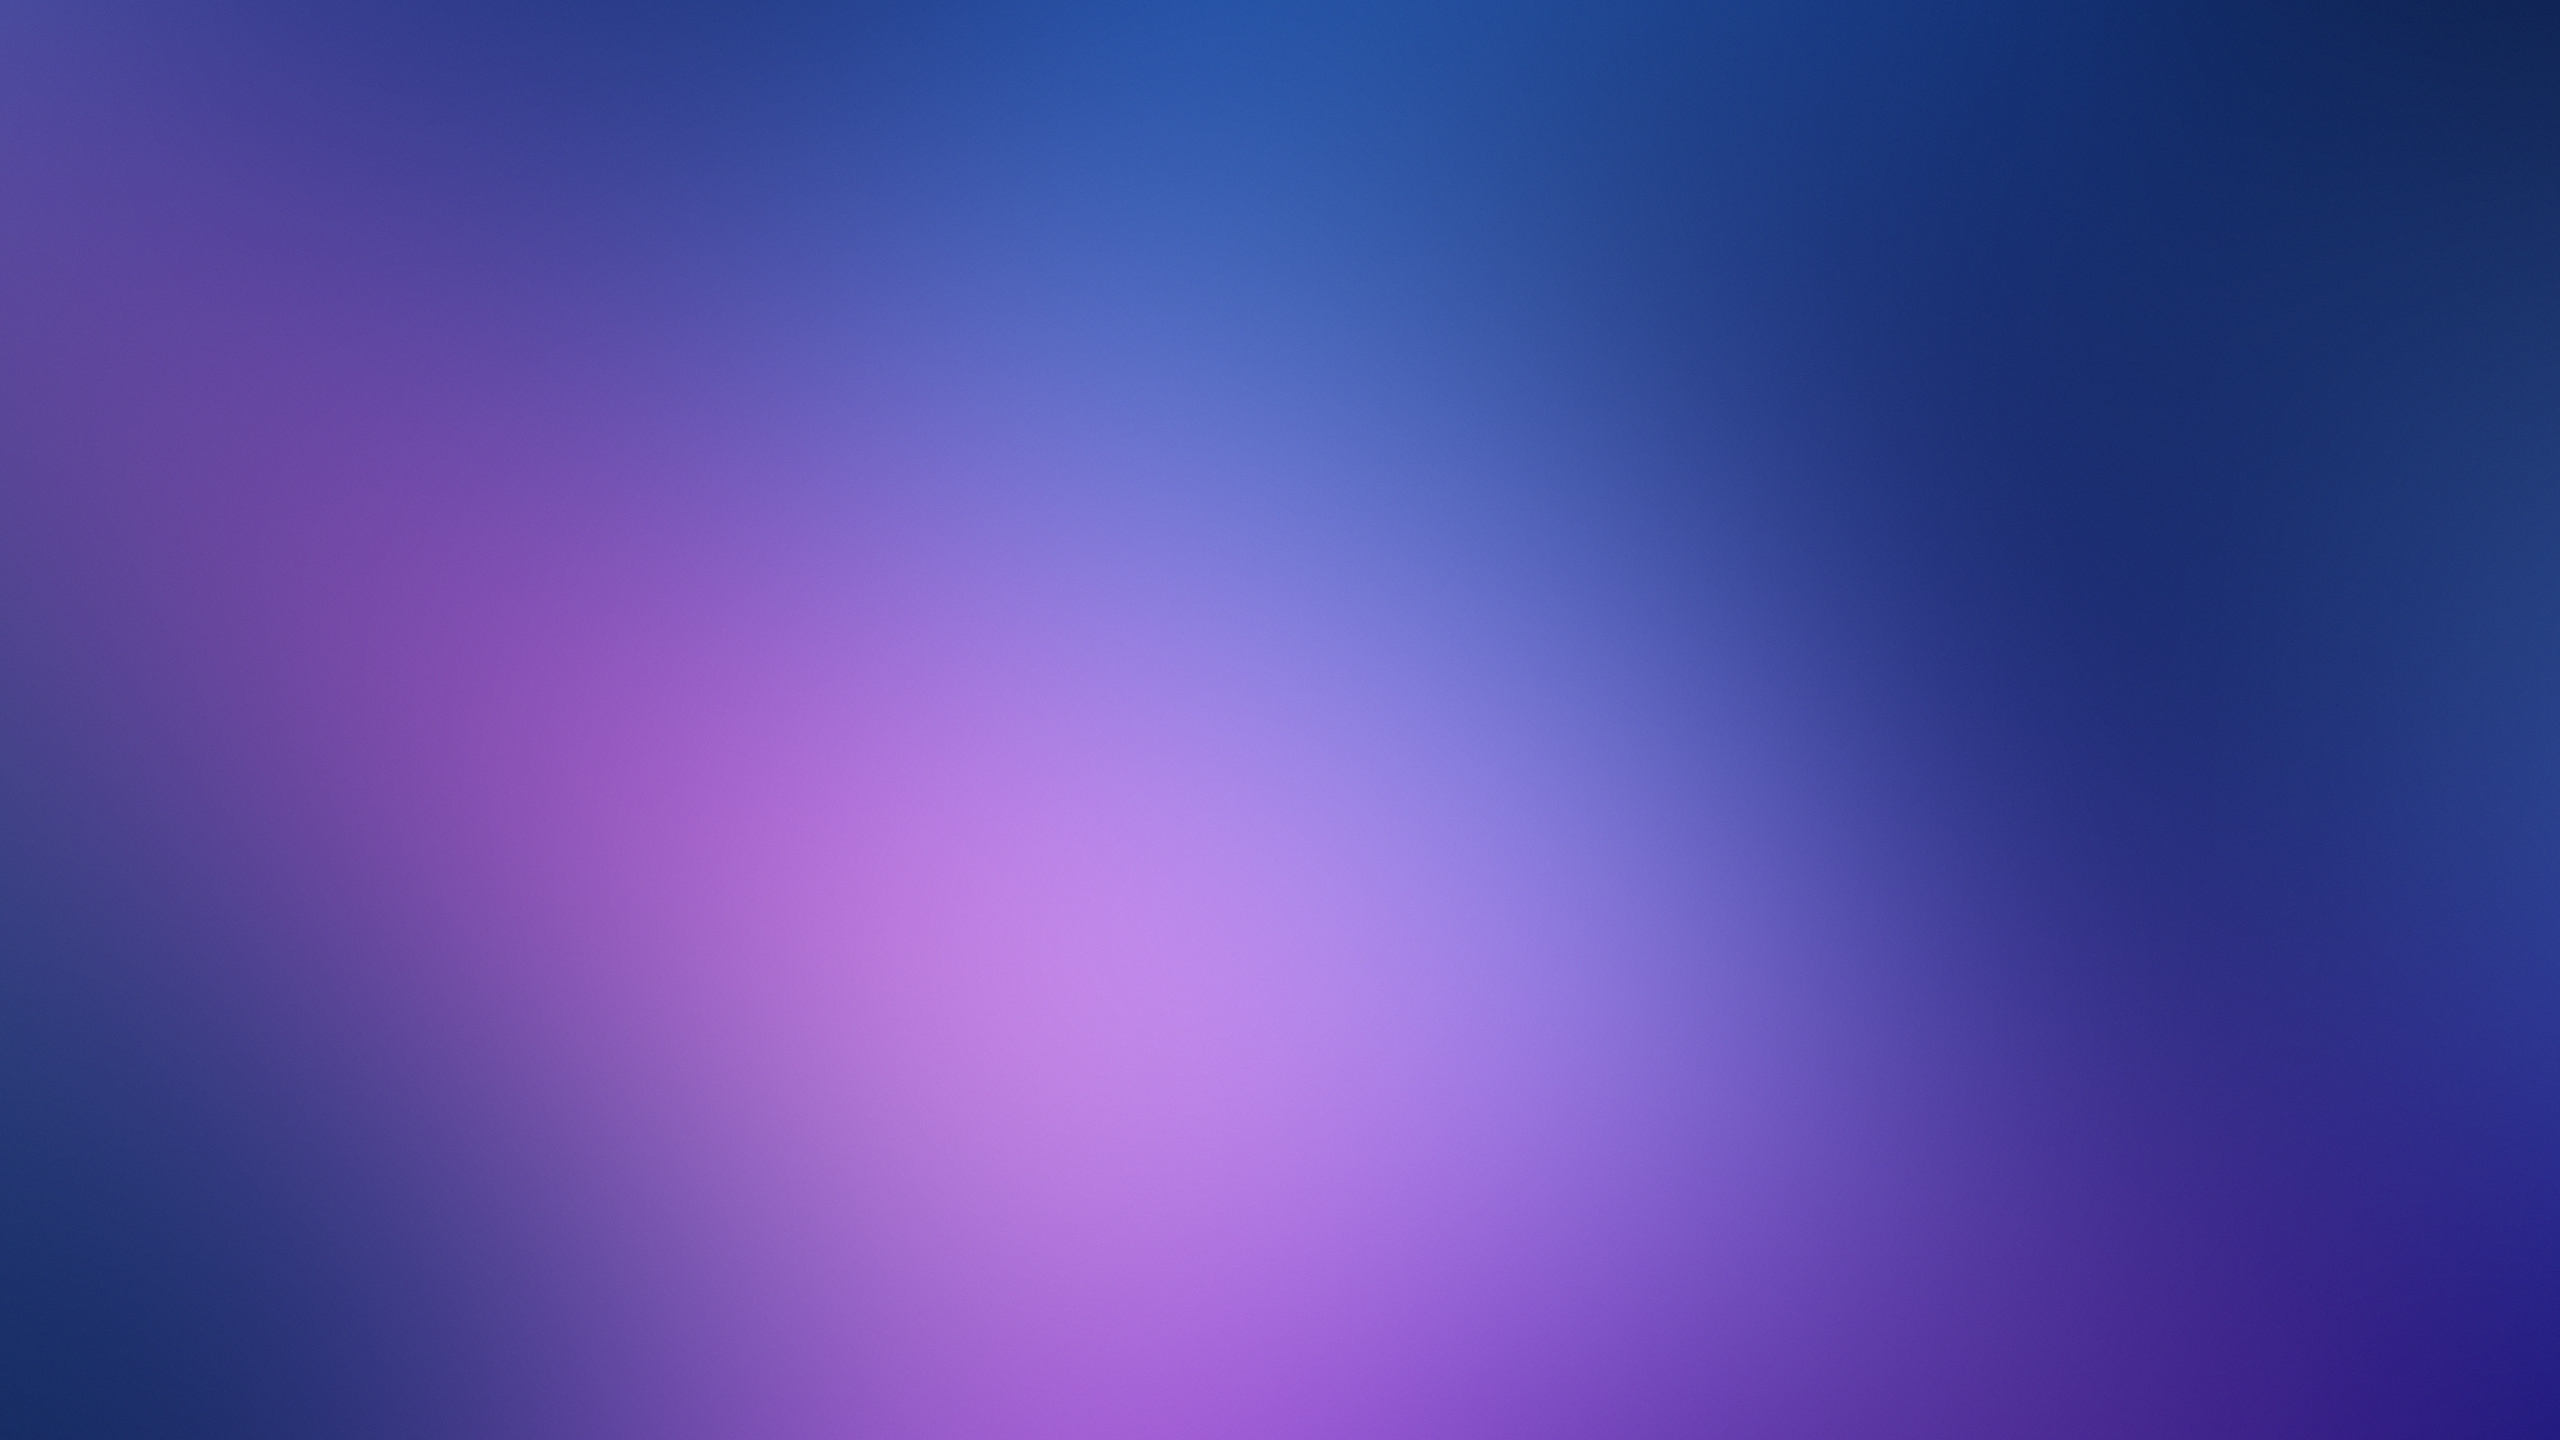 Hình nền trừu tượng màu tím xanh (Purple blue abstract wallpapers) là lựa chọn tuyệt vời cho những ai yêu thích những điều đầy bất ngờ và sáng tạo. Với sự kết hợp hoàn hảo của các tông màu tím và xanh, bạn sẽ có một kiệt tác nghệ thuật trừu tượng đầy mê hoặc trên nền điện thoại của mình.